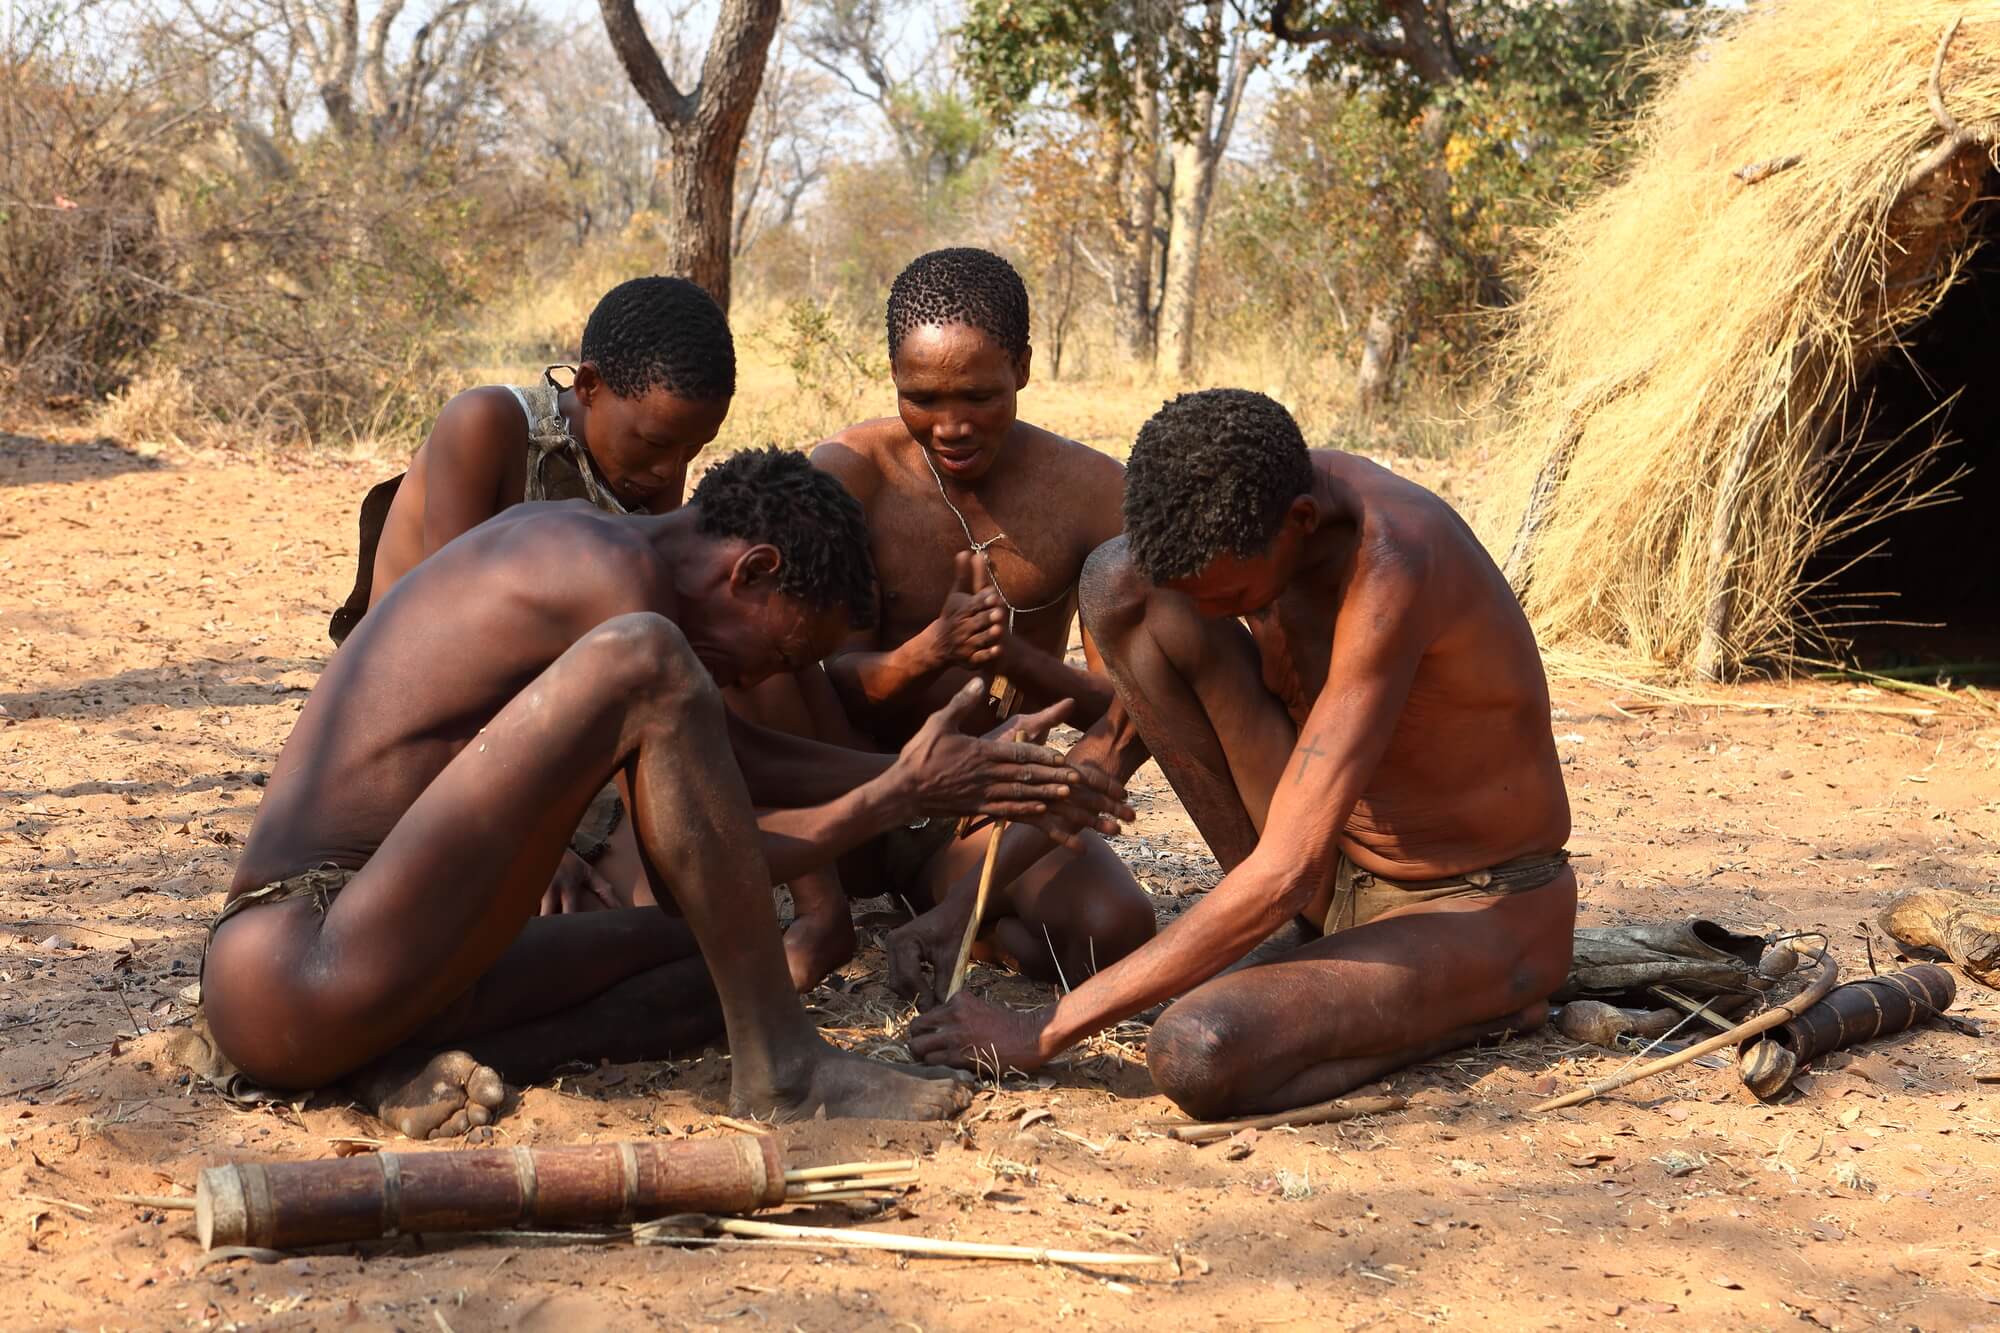 בושמנים באפריקה מבעירים אש ביחד.איור: depositphotos.com